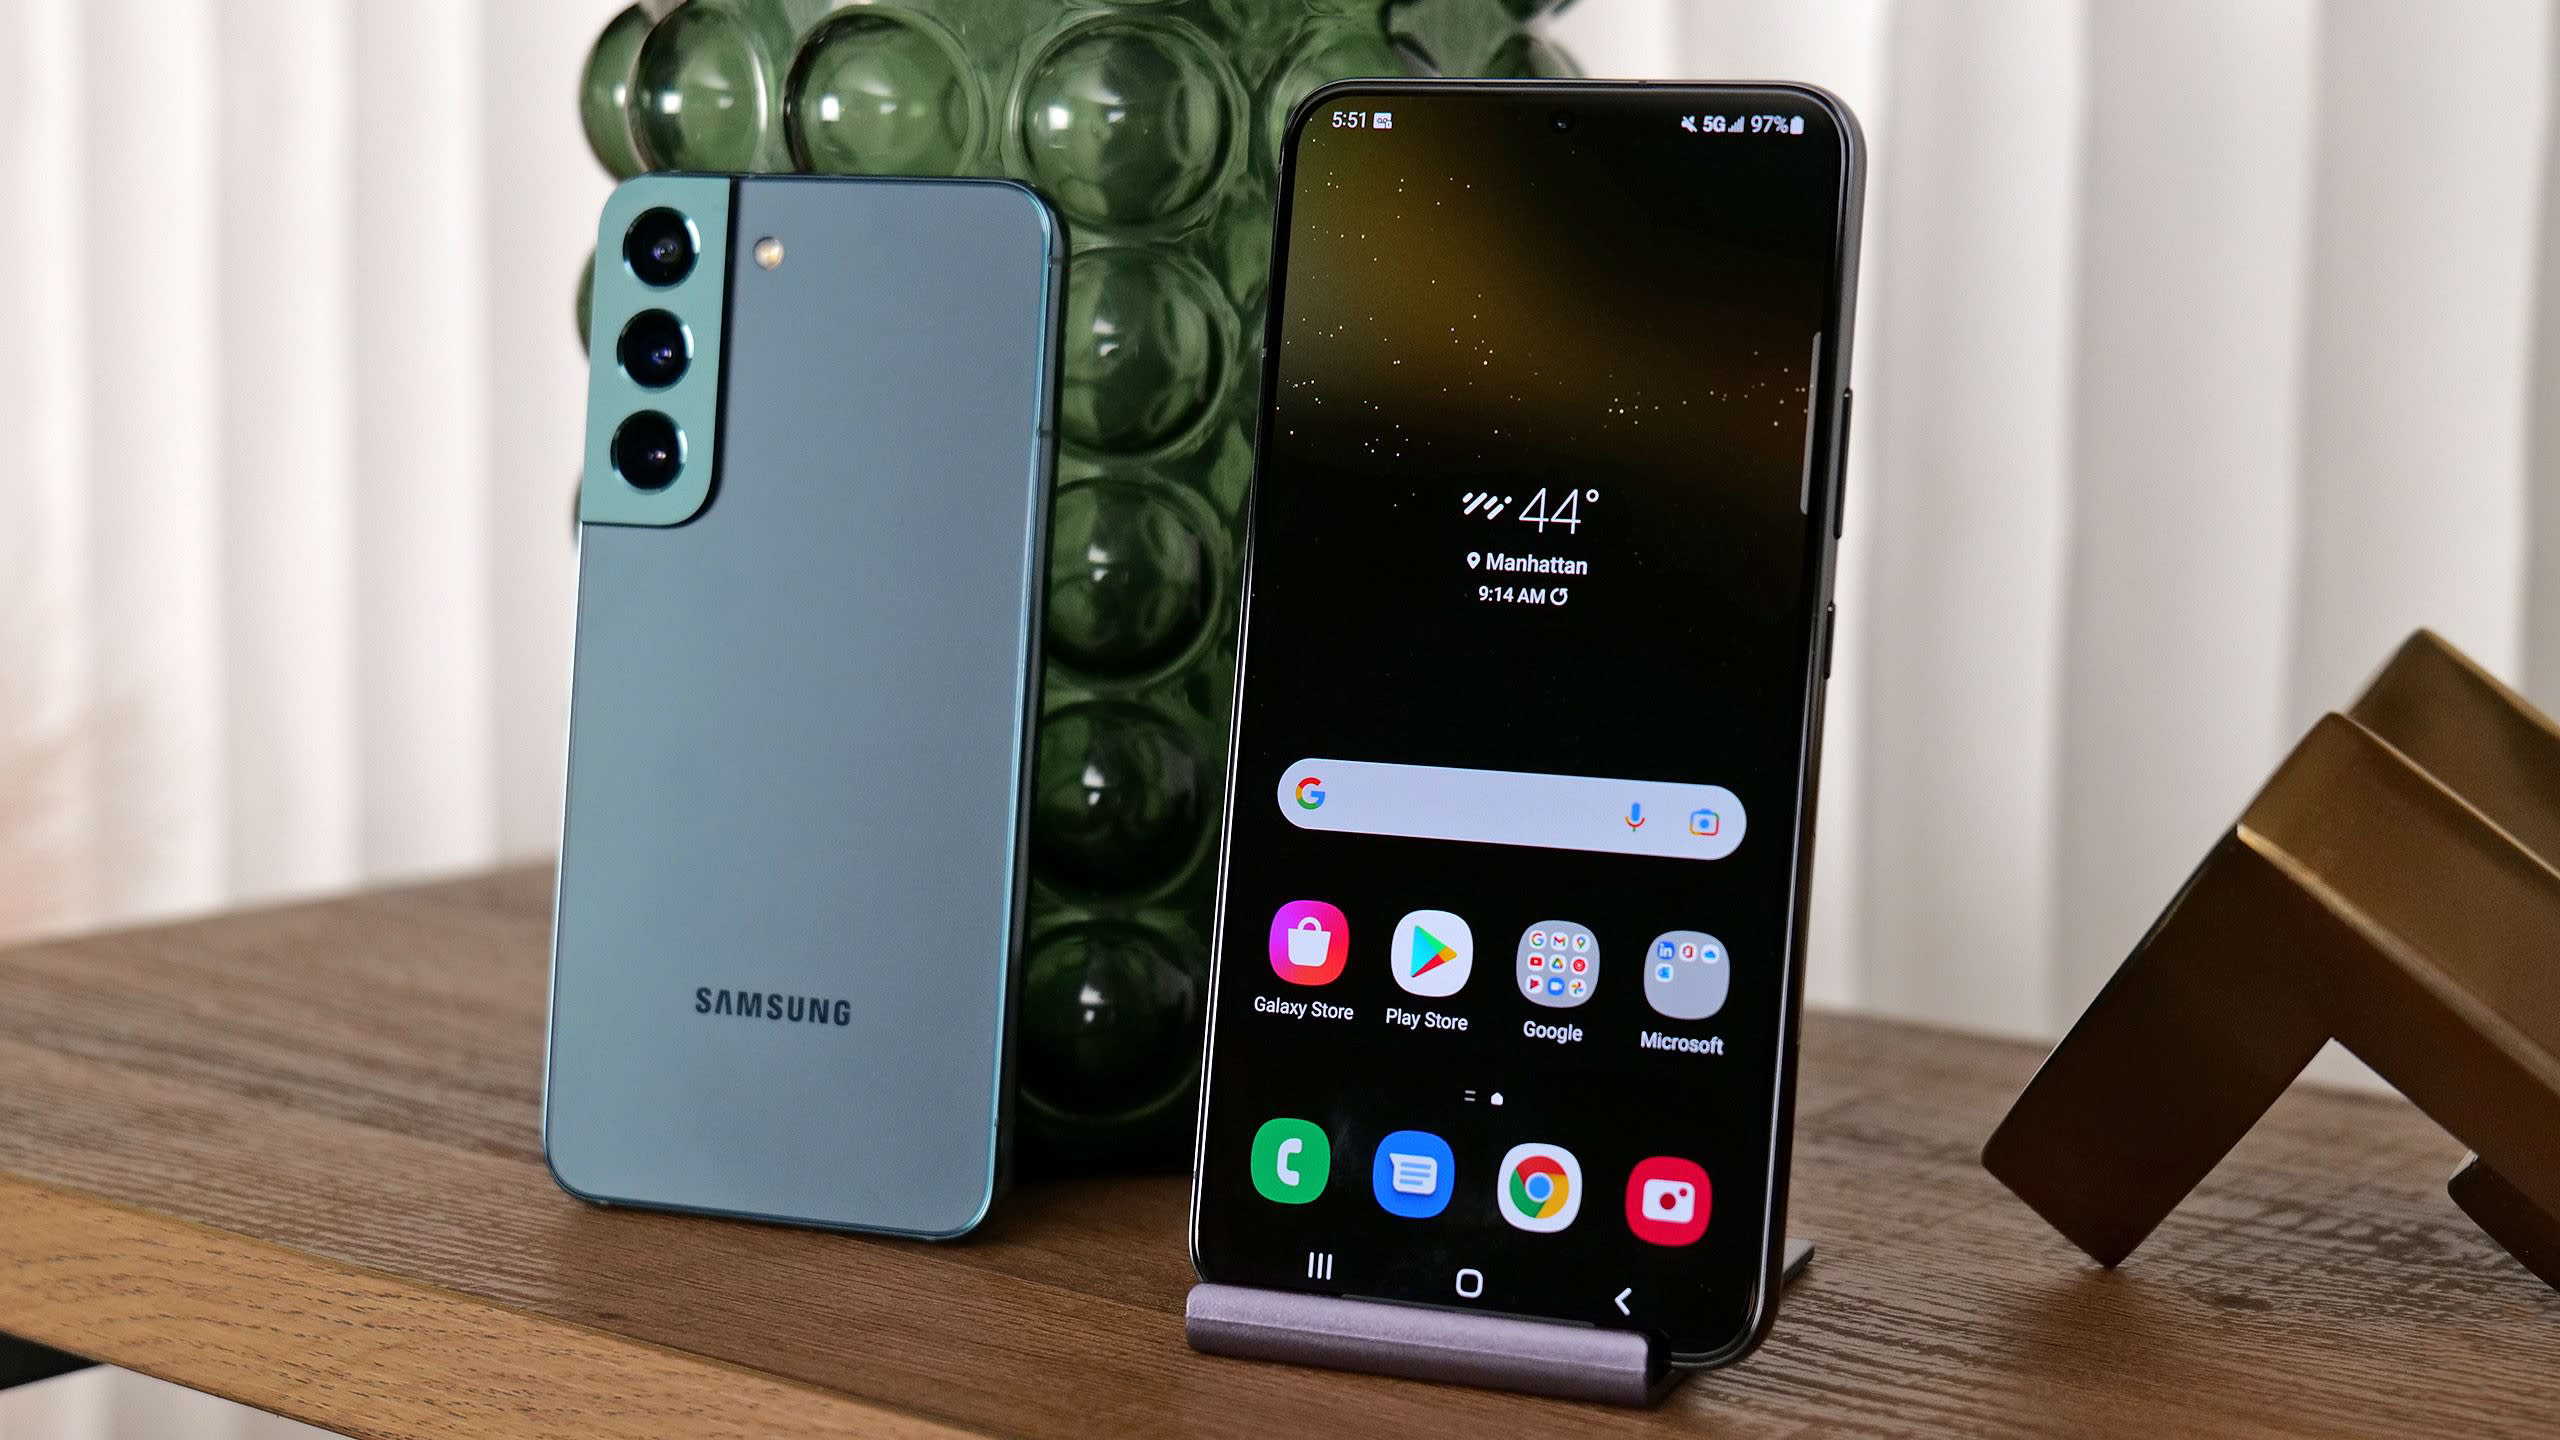 Samsung Galaxy S22 cũ: Bạn đang tìm kiếm một chiếc điện thoại chất lượng nhưng lại muốn tiết kiệm chi phí? Hãy tìm đến Samsung Galaxy S22 cũ! Ở đó, bạn sẽ tìm thấy những chiếc điện thoại tốt nhất với giá cả phải chăng. Với những tính năng cực kỳ tiện lợi, bạn sẽ không hối hận khi sở hữu một chiếc điện thoại Samsung Galaxy S22 cũ.